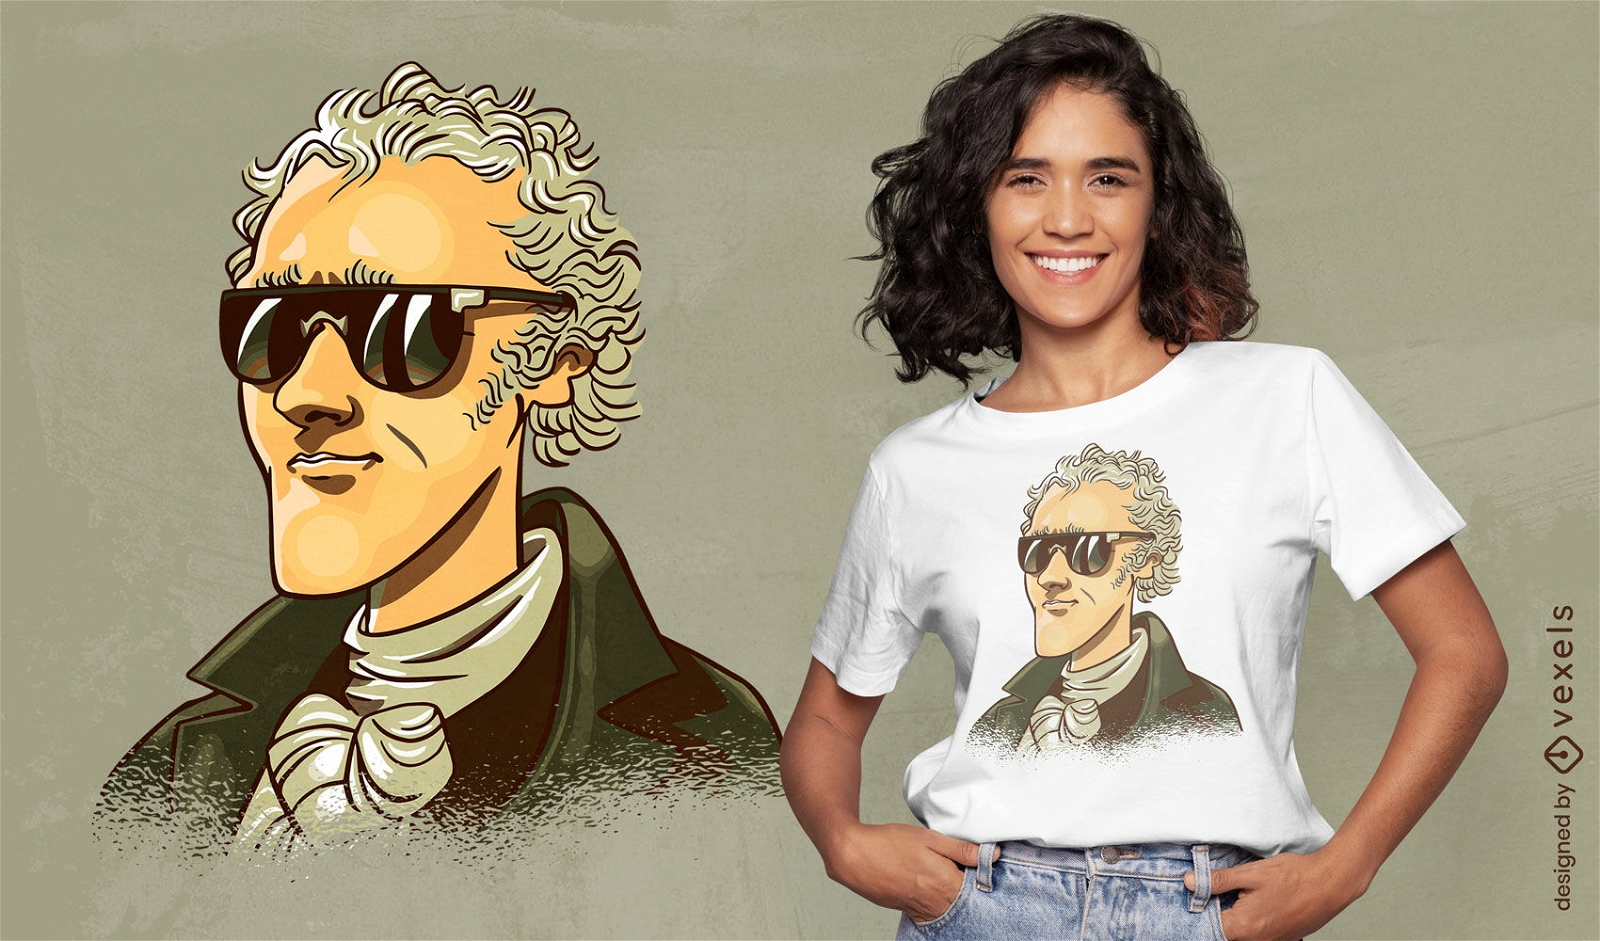 Diseño de camiseta de gafas de sol de Alexander Hamilton